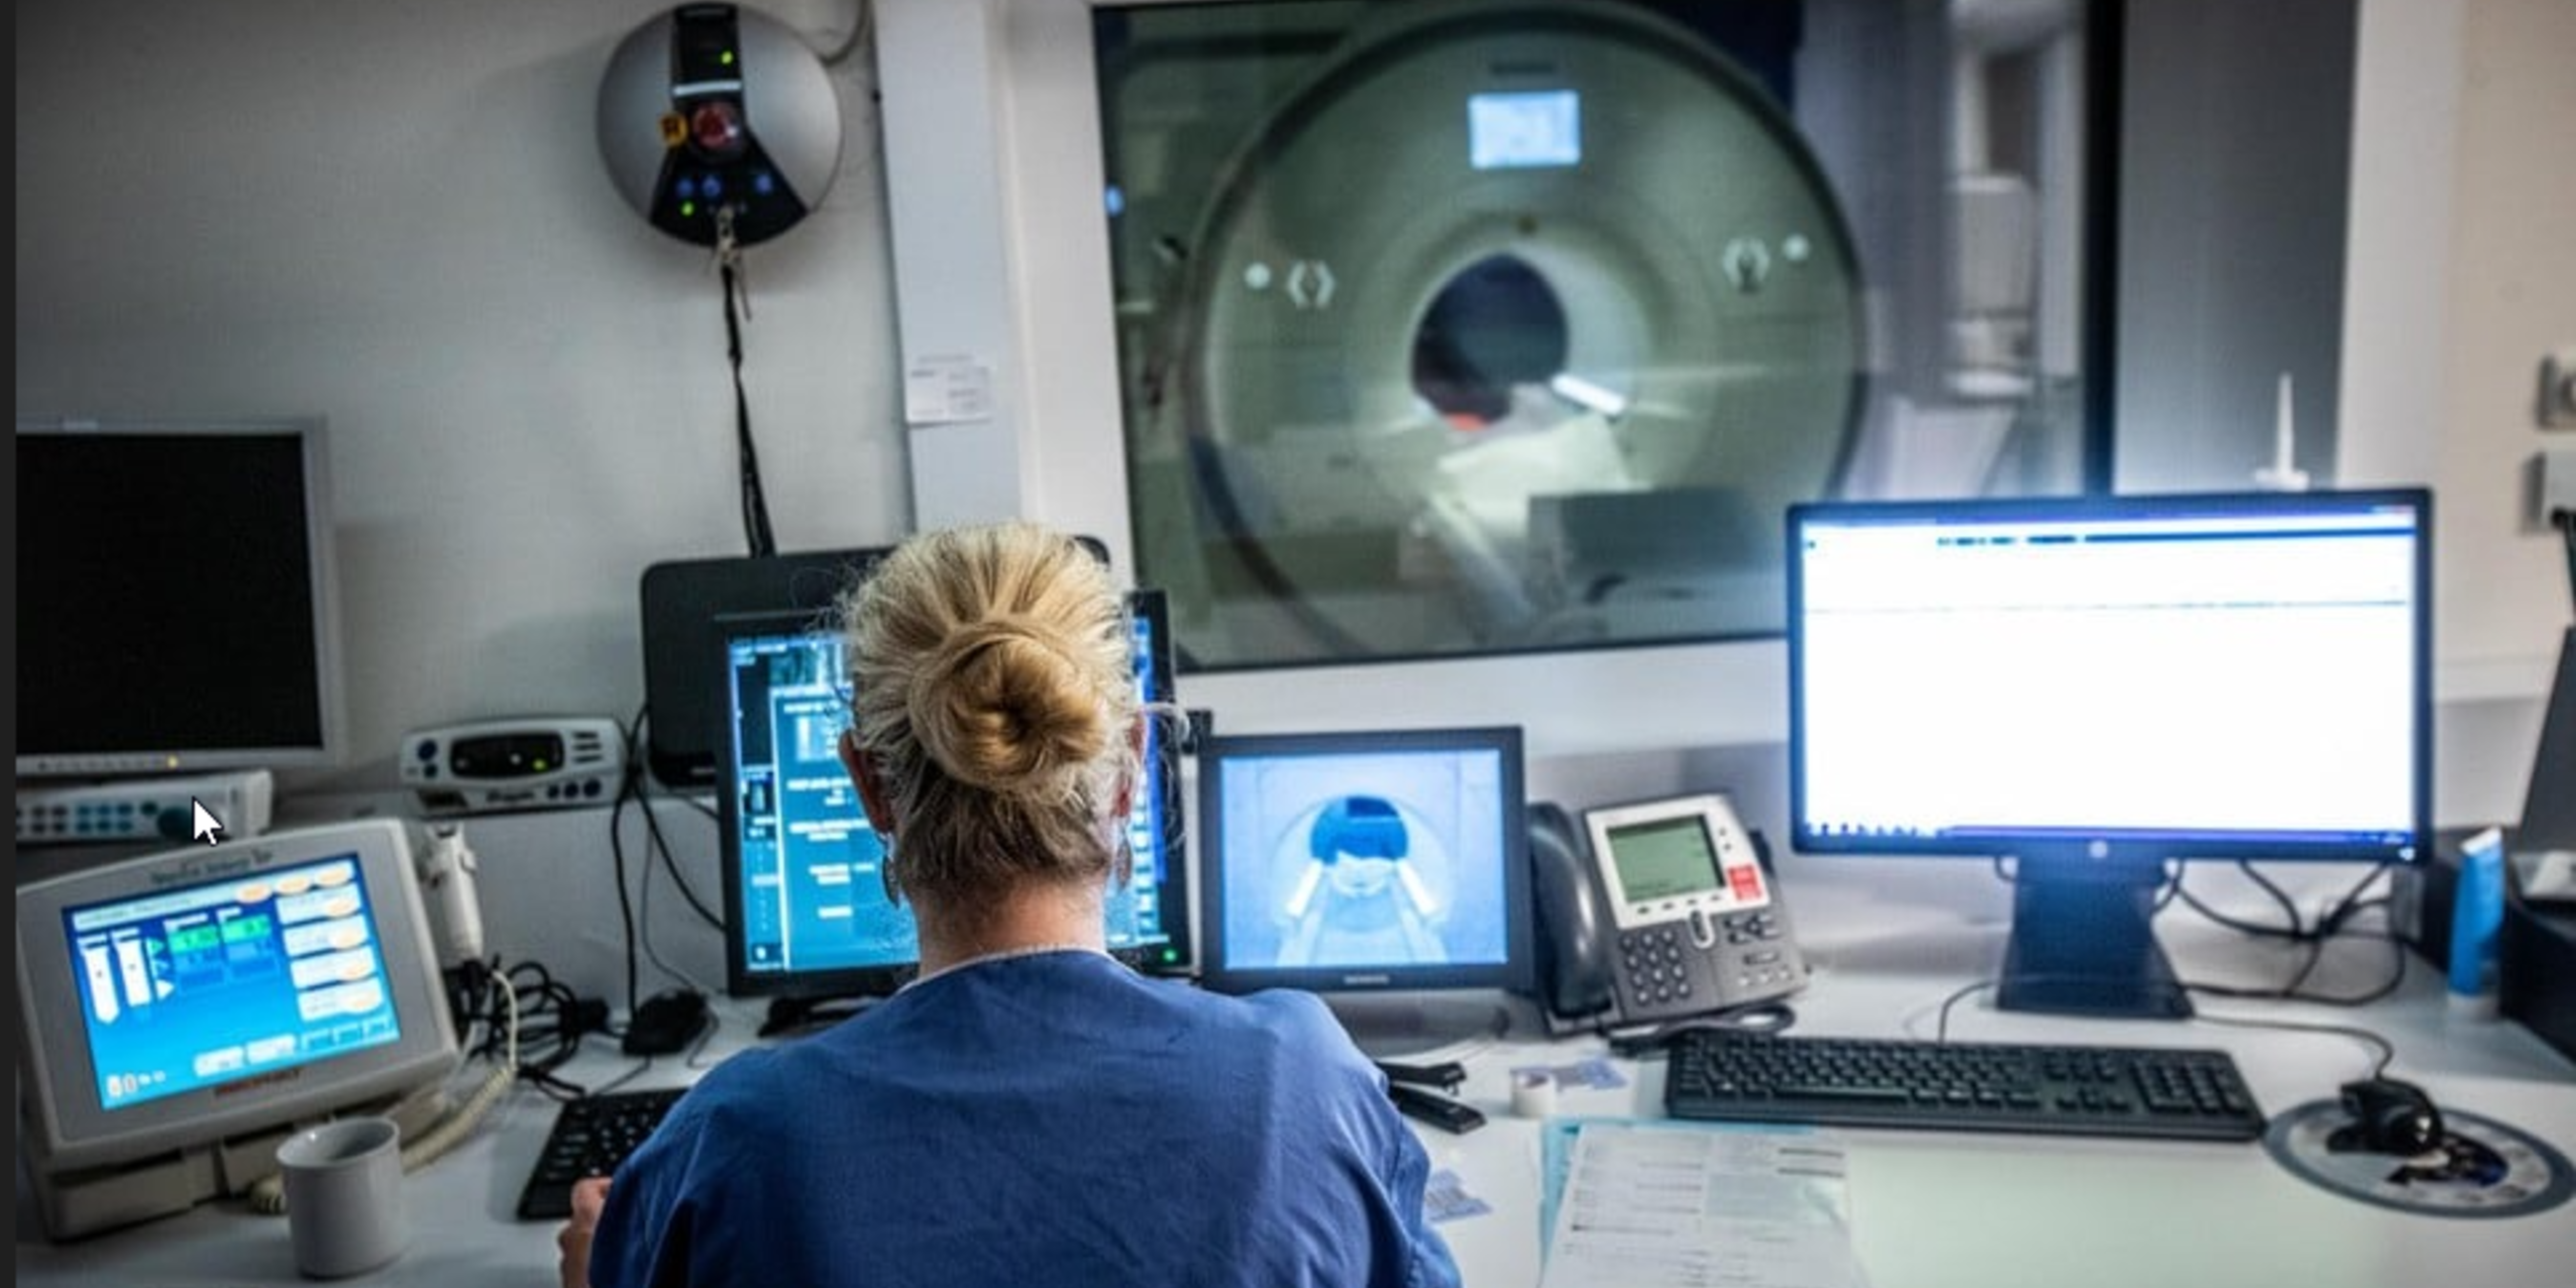 Ondanks nachtelijke MRI-scans in ZOL blijven wachttijden lang